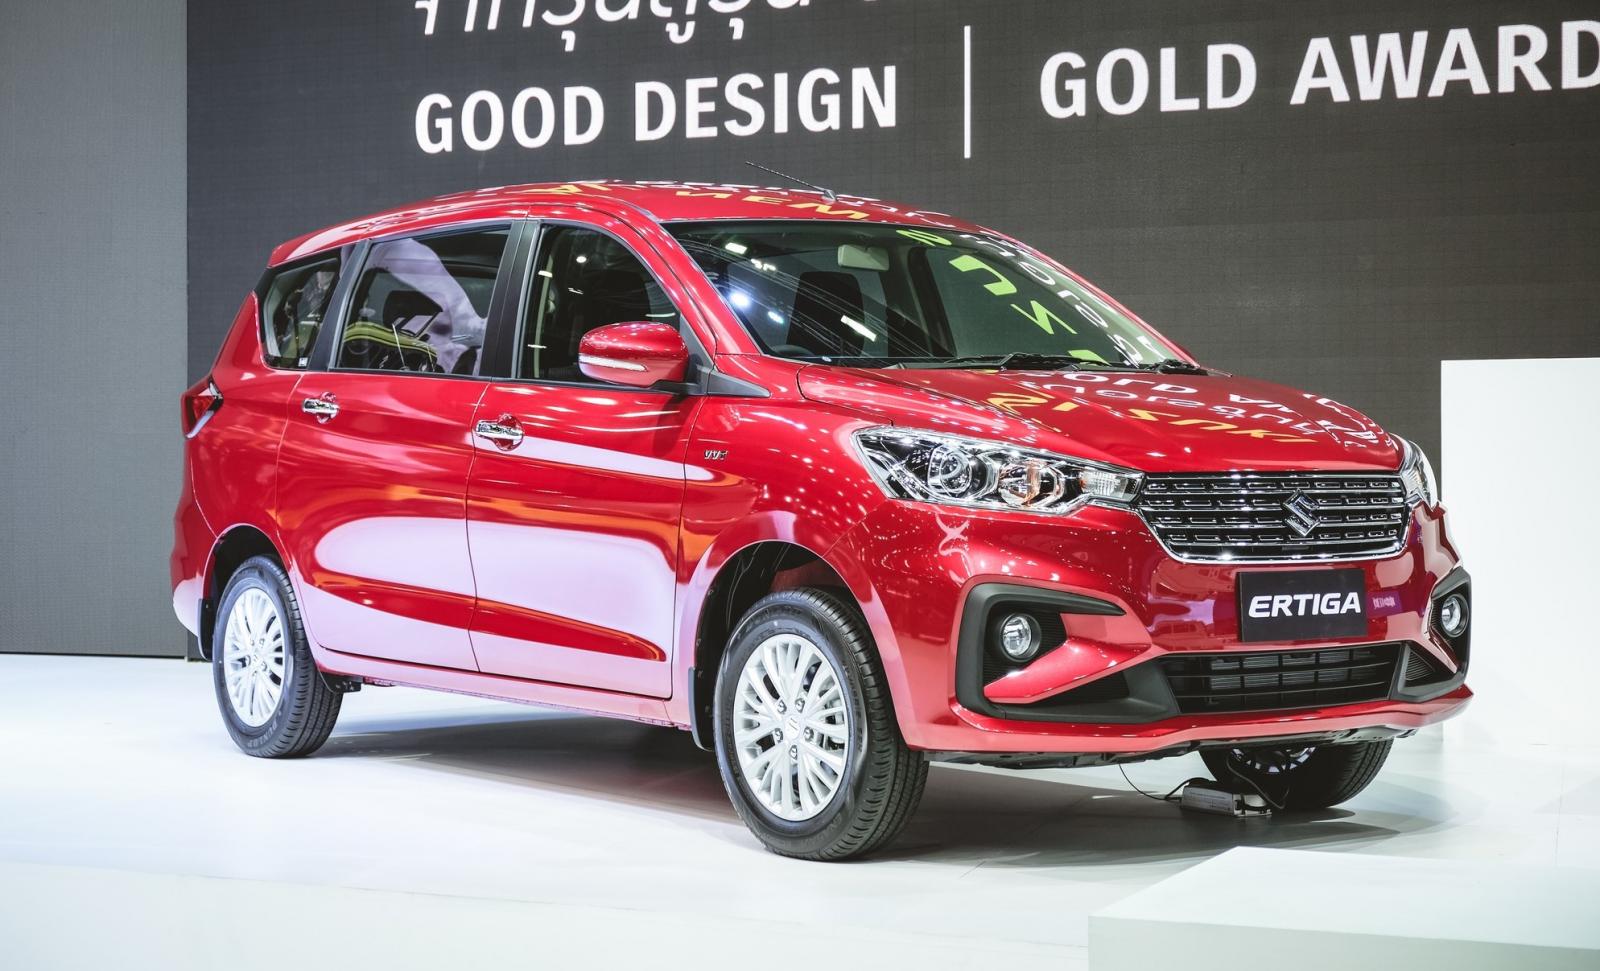 Đại lý nhận cọc đặt mua Suzuki Ertiga 2019 chỉ từ 5 triệu đồng 